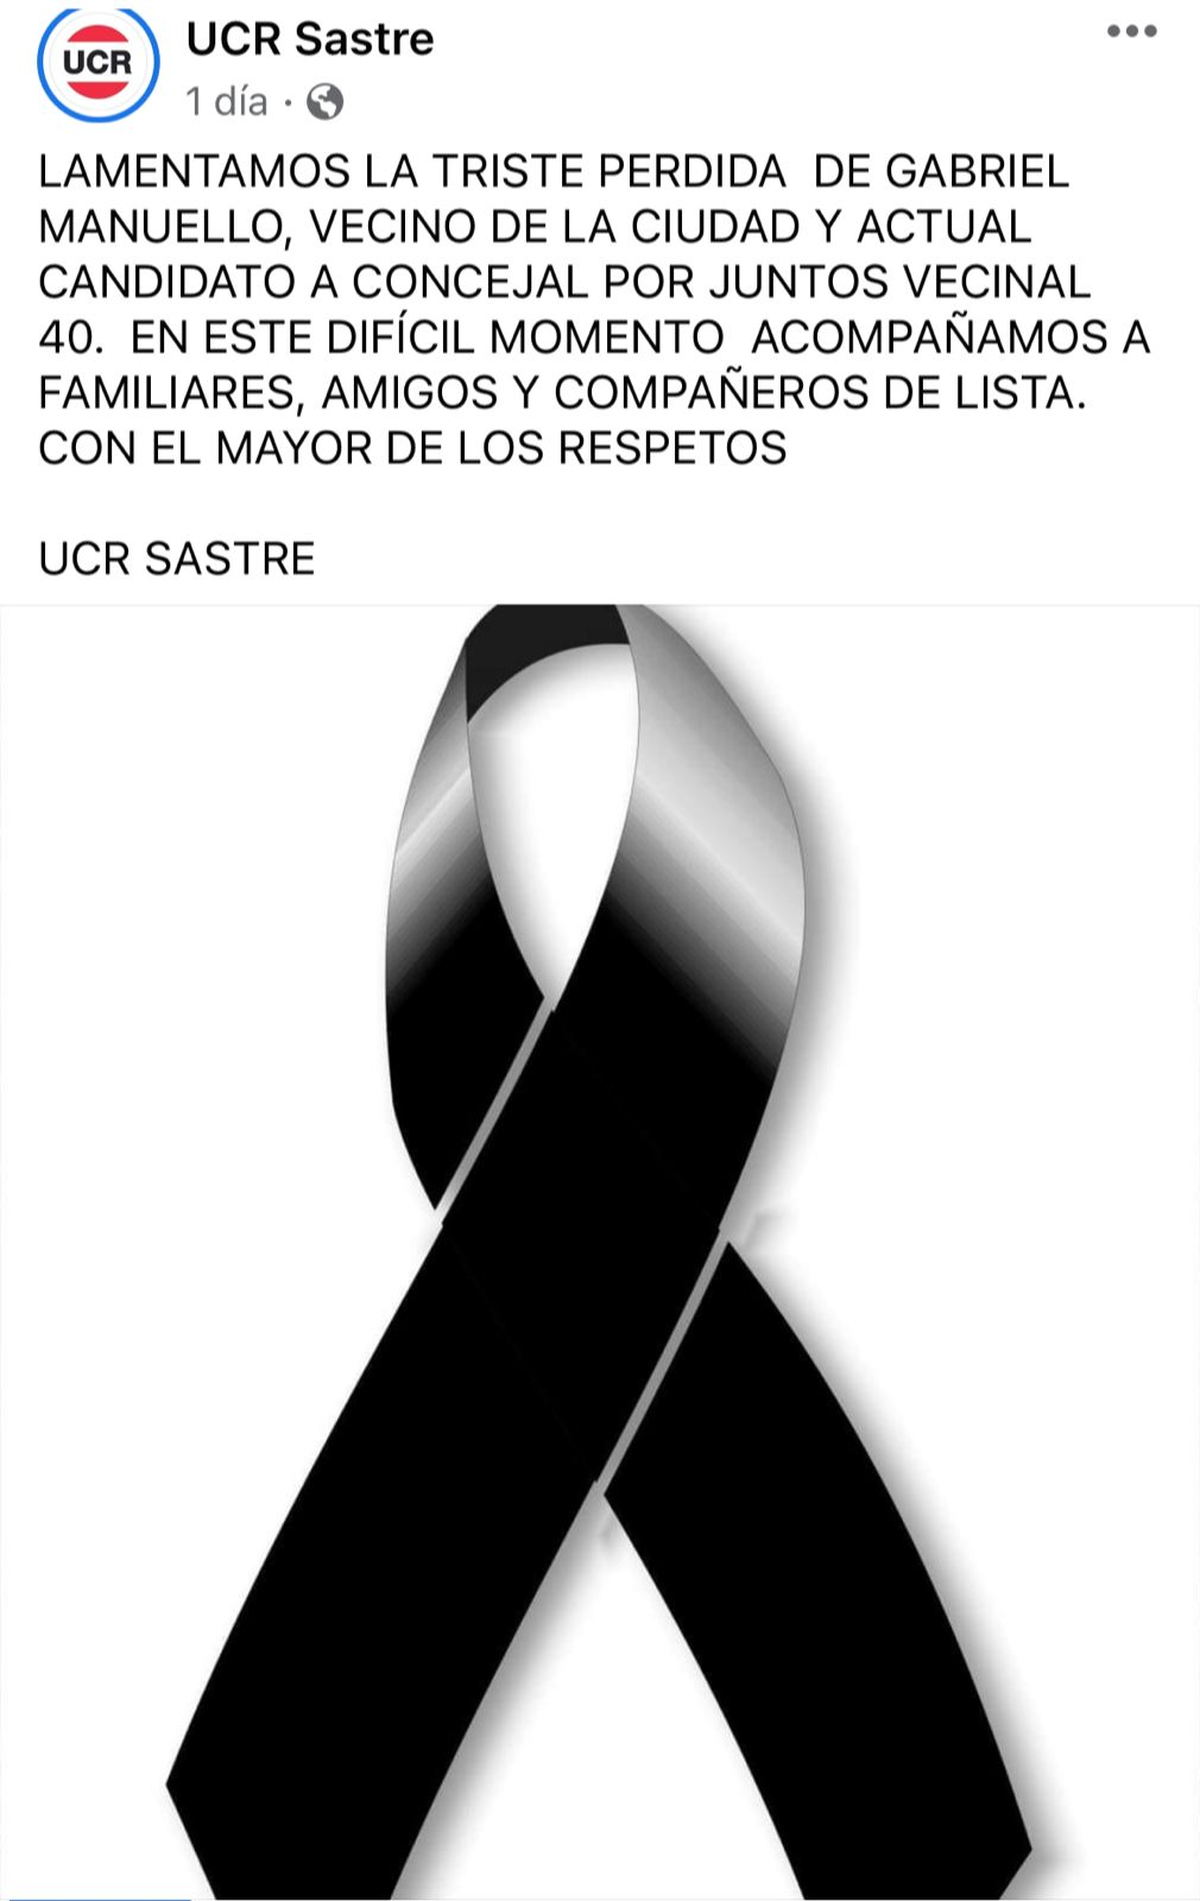 El mensaje de la UCR Sastre tras el fallecimiento de Gabriel Manuello.